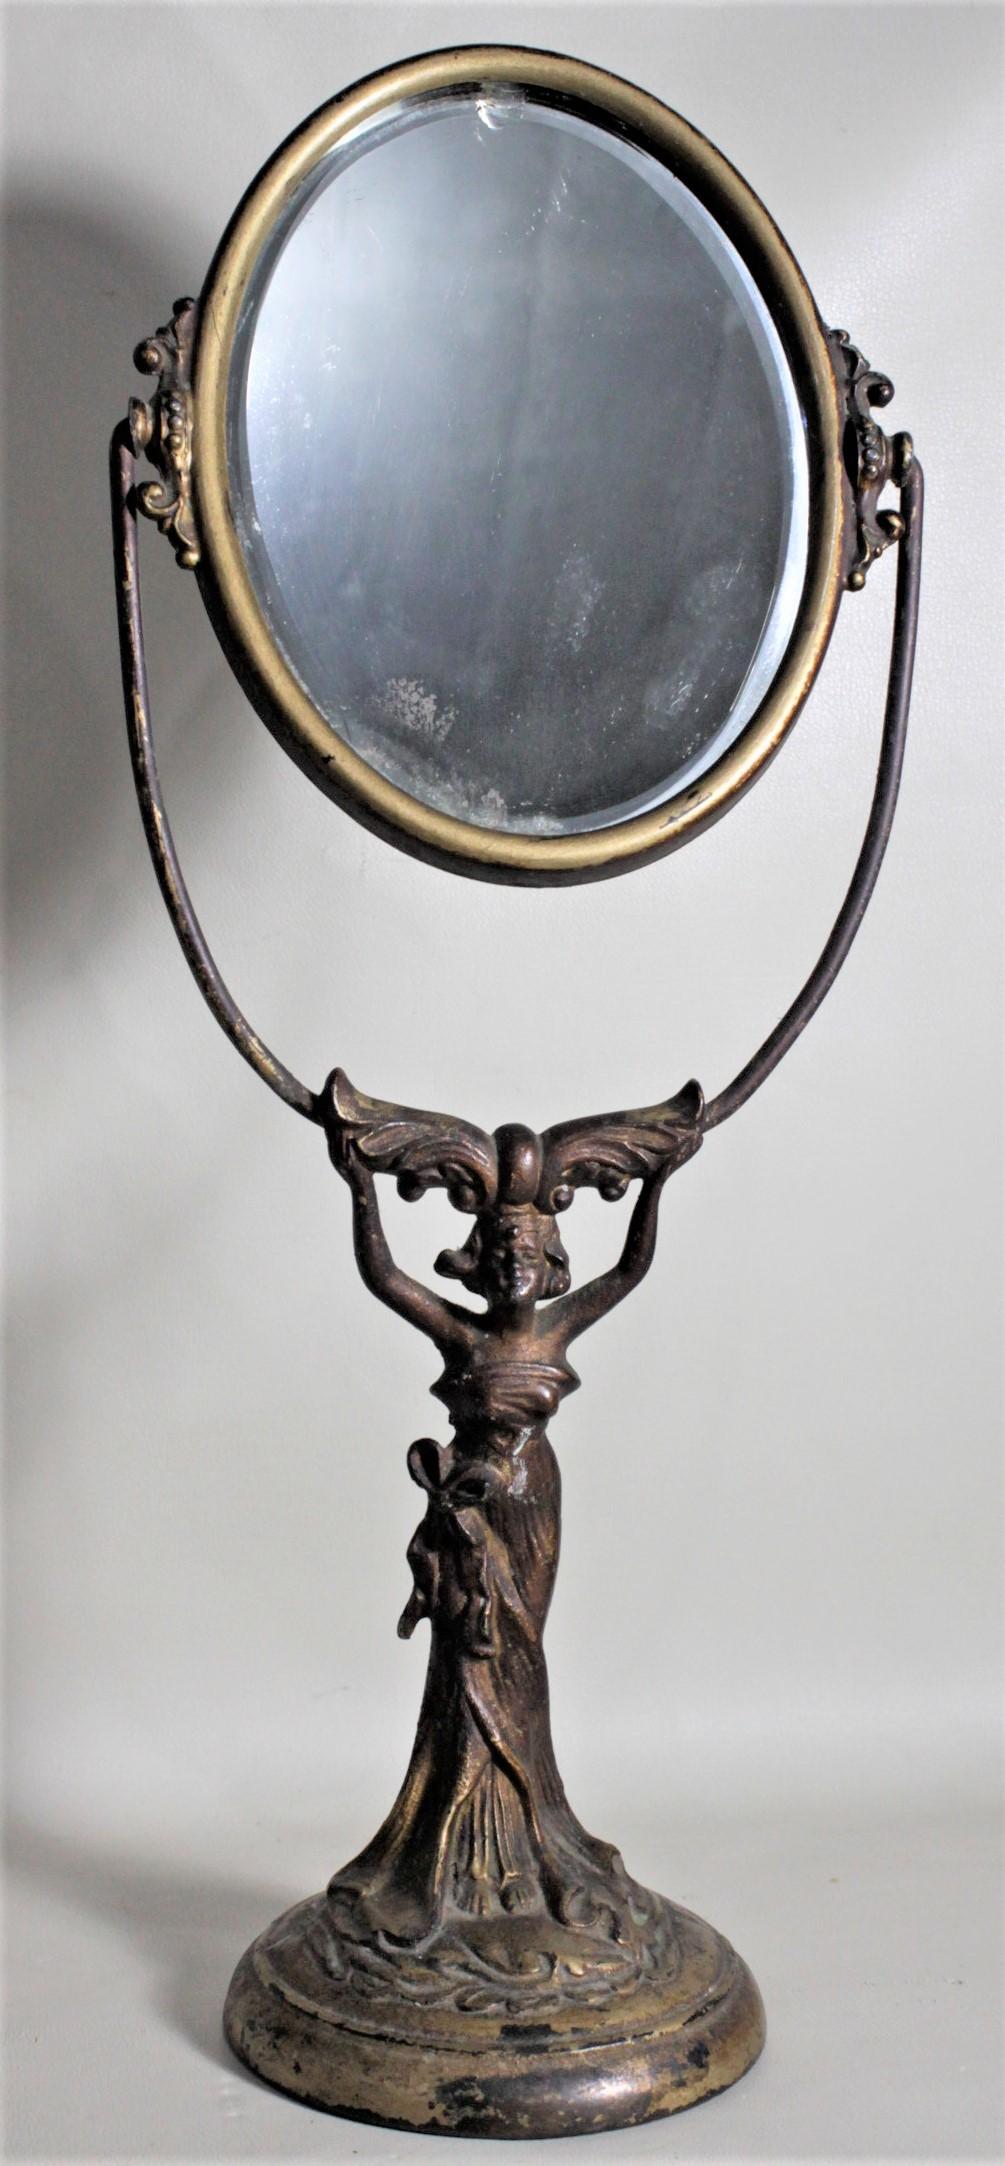 Ce miroir ancien de dame sur pied n'est pas signé, mais on présume qu'il a été fabriqué en France vers 1890 dans le style Art Nouveau. La base du miroir représente une femme en métal moulé, vêtue d'une robe fluide, avec une finition en bronze